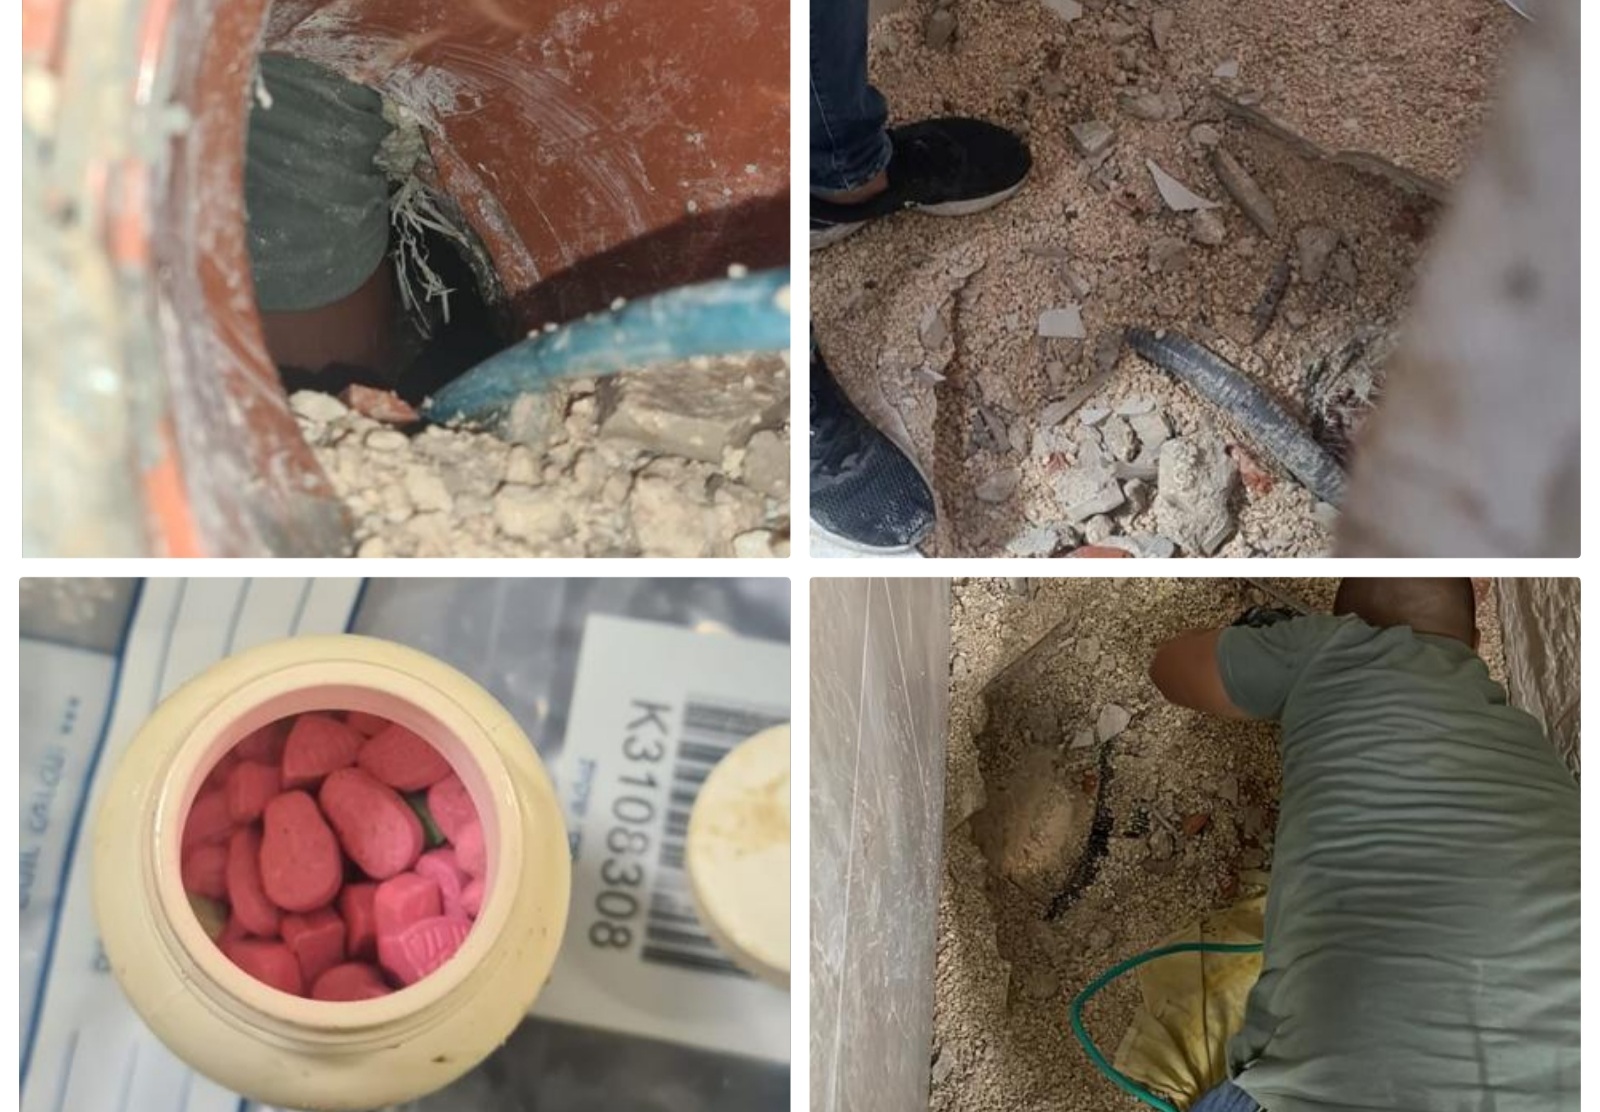 מטורף: המשטרה חשפה סמים מסוכנים בתוך צינור ביוב בבית מגורים במזרח ירושלים